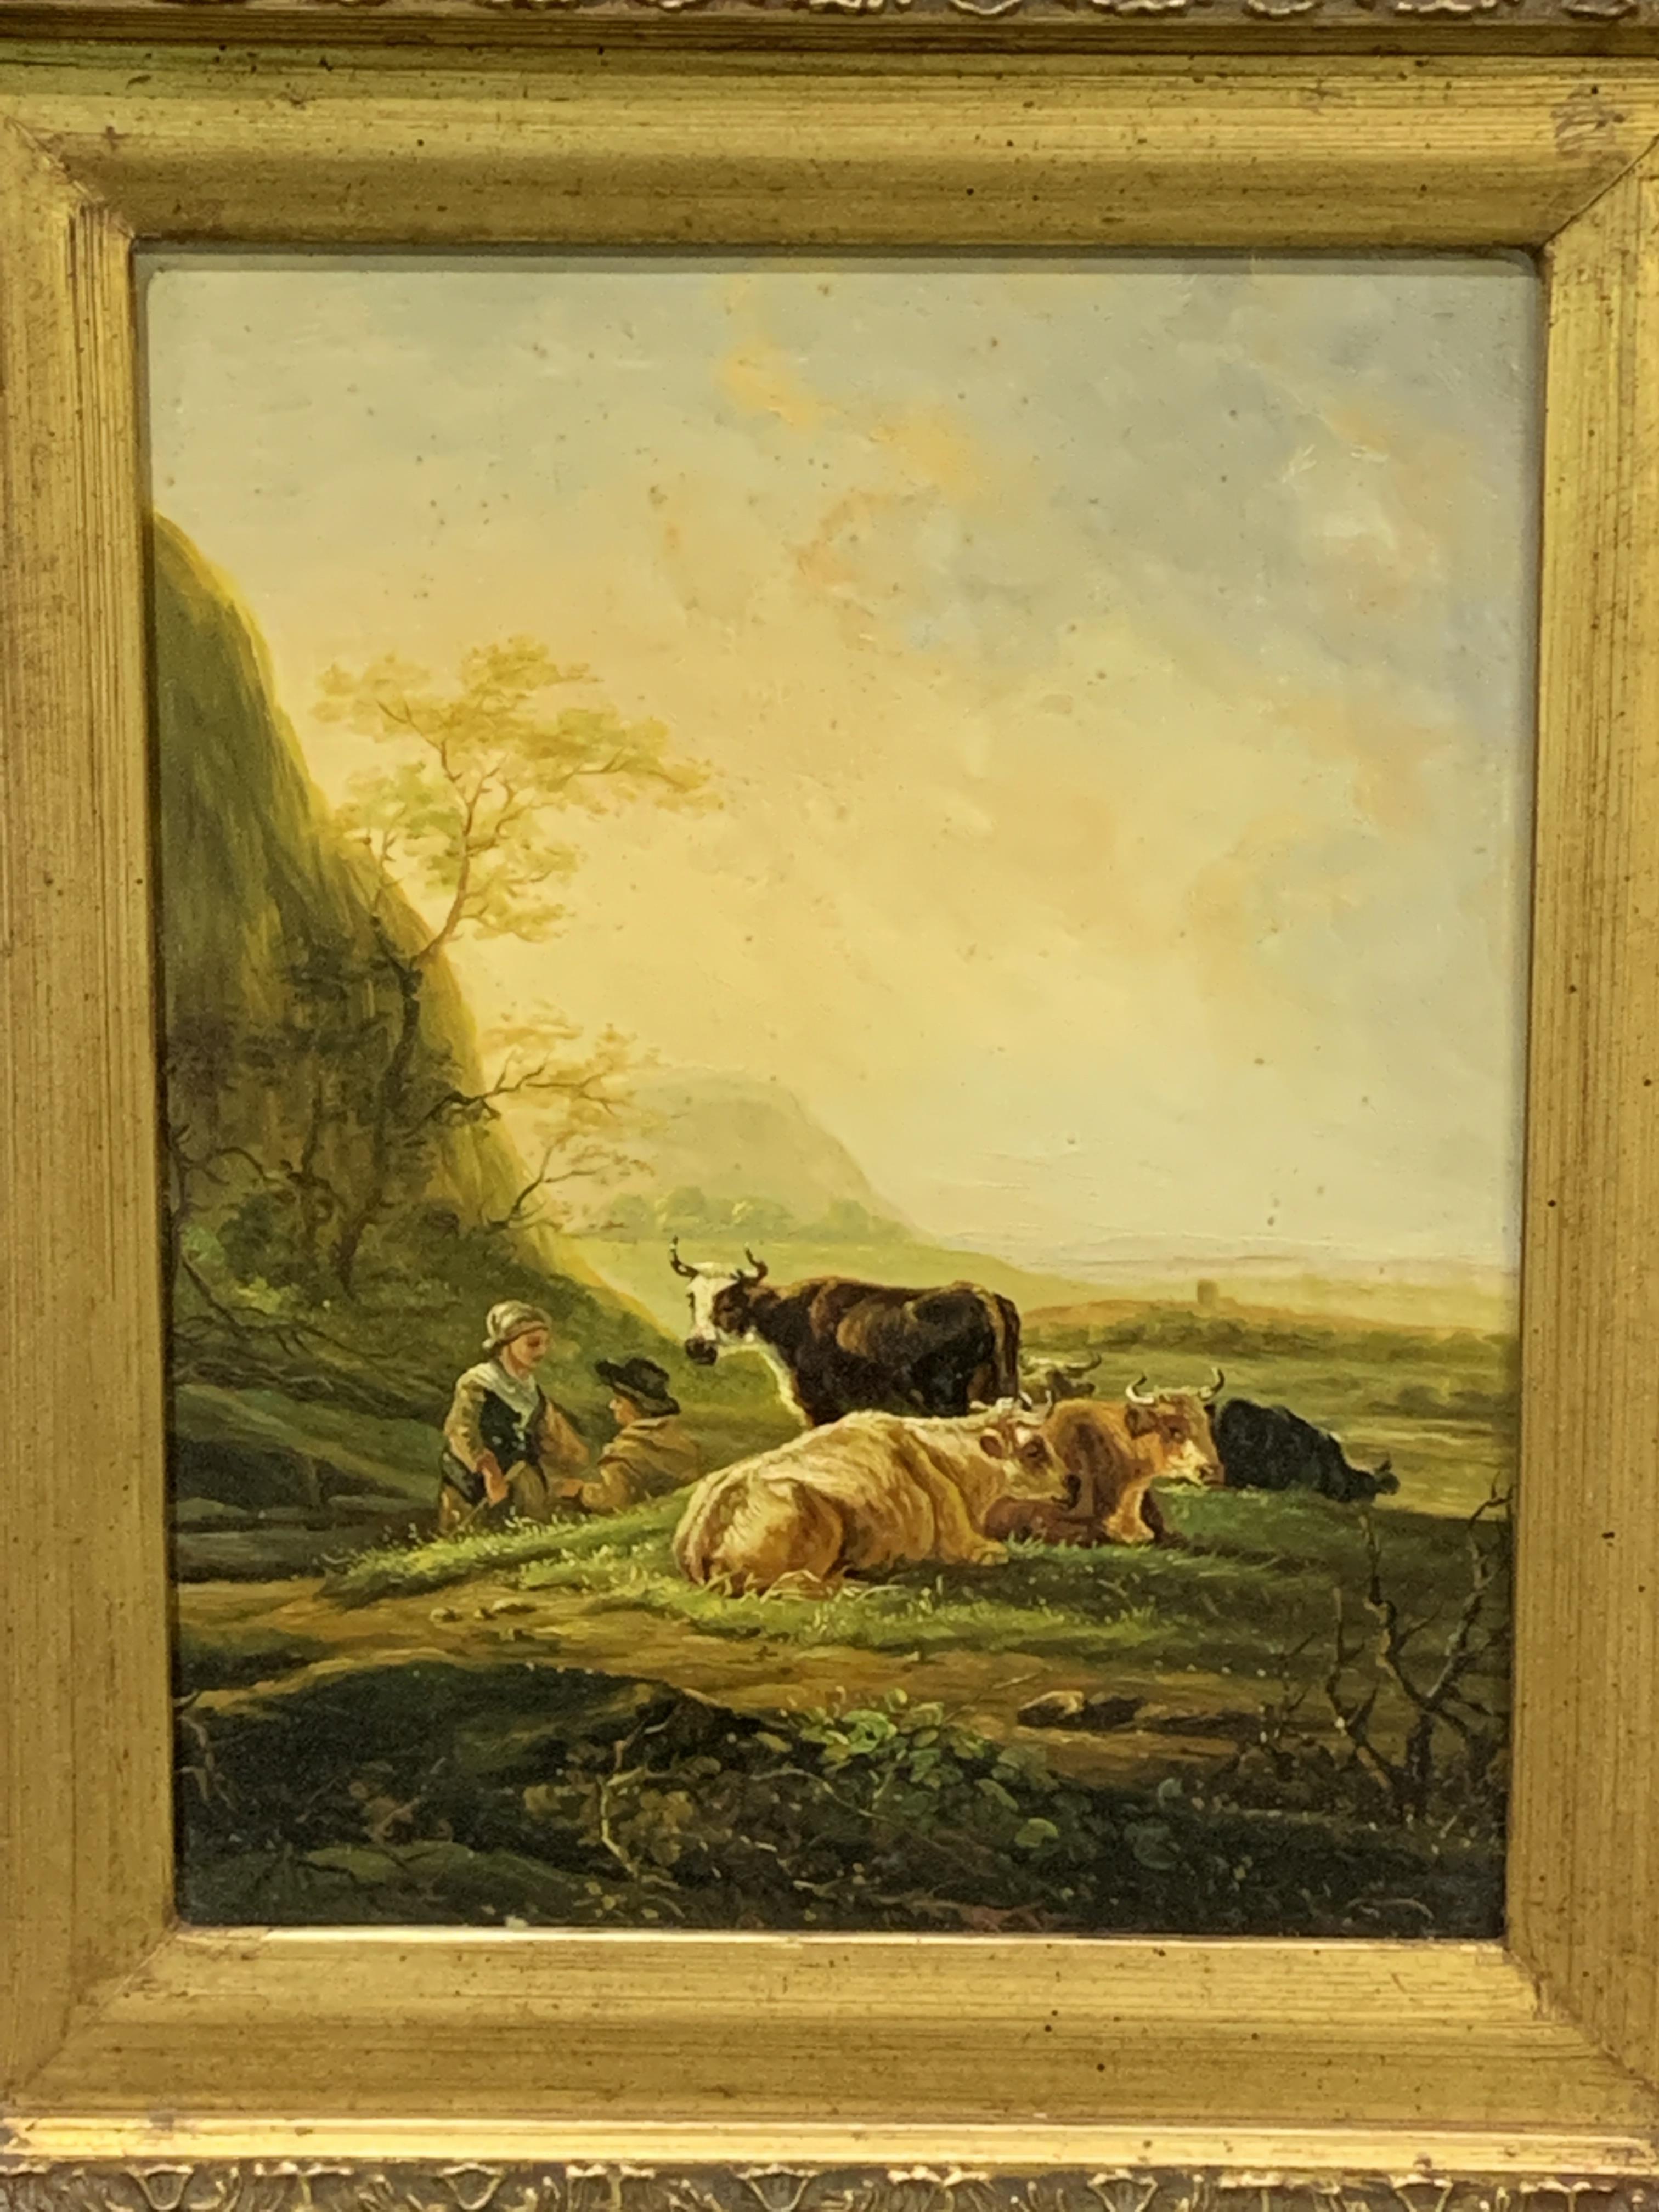 Oil on board of cows in a field